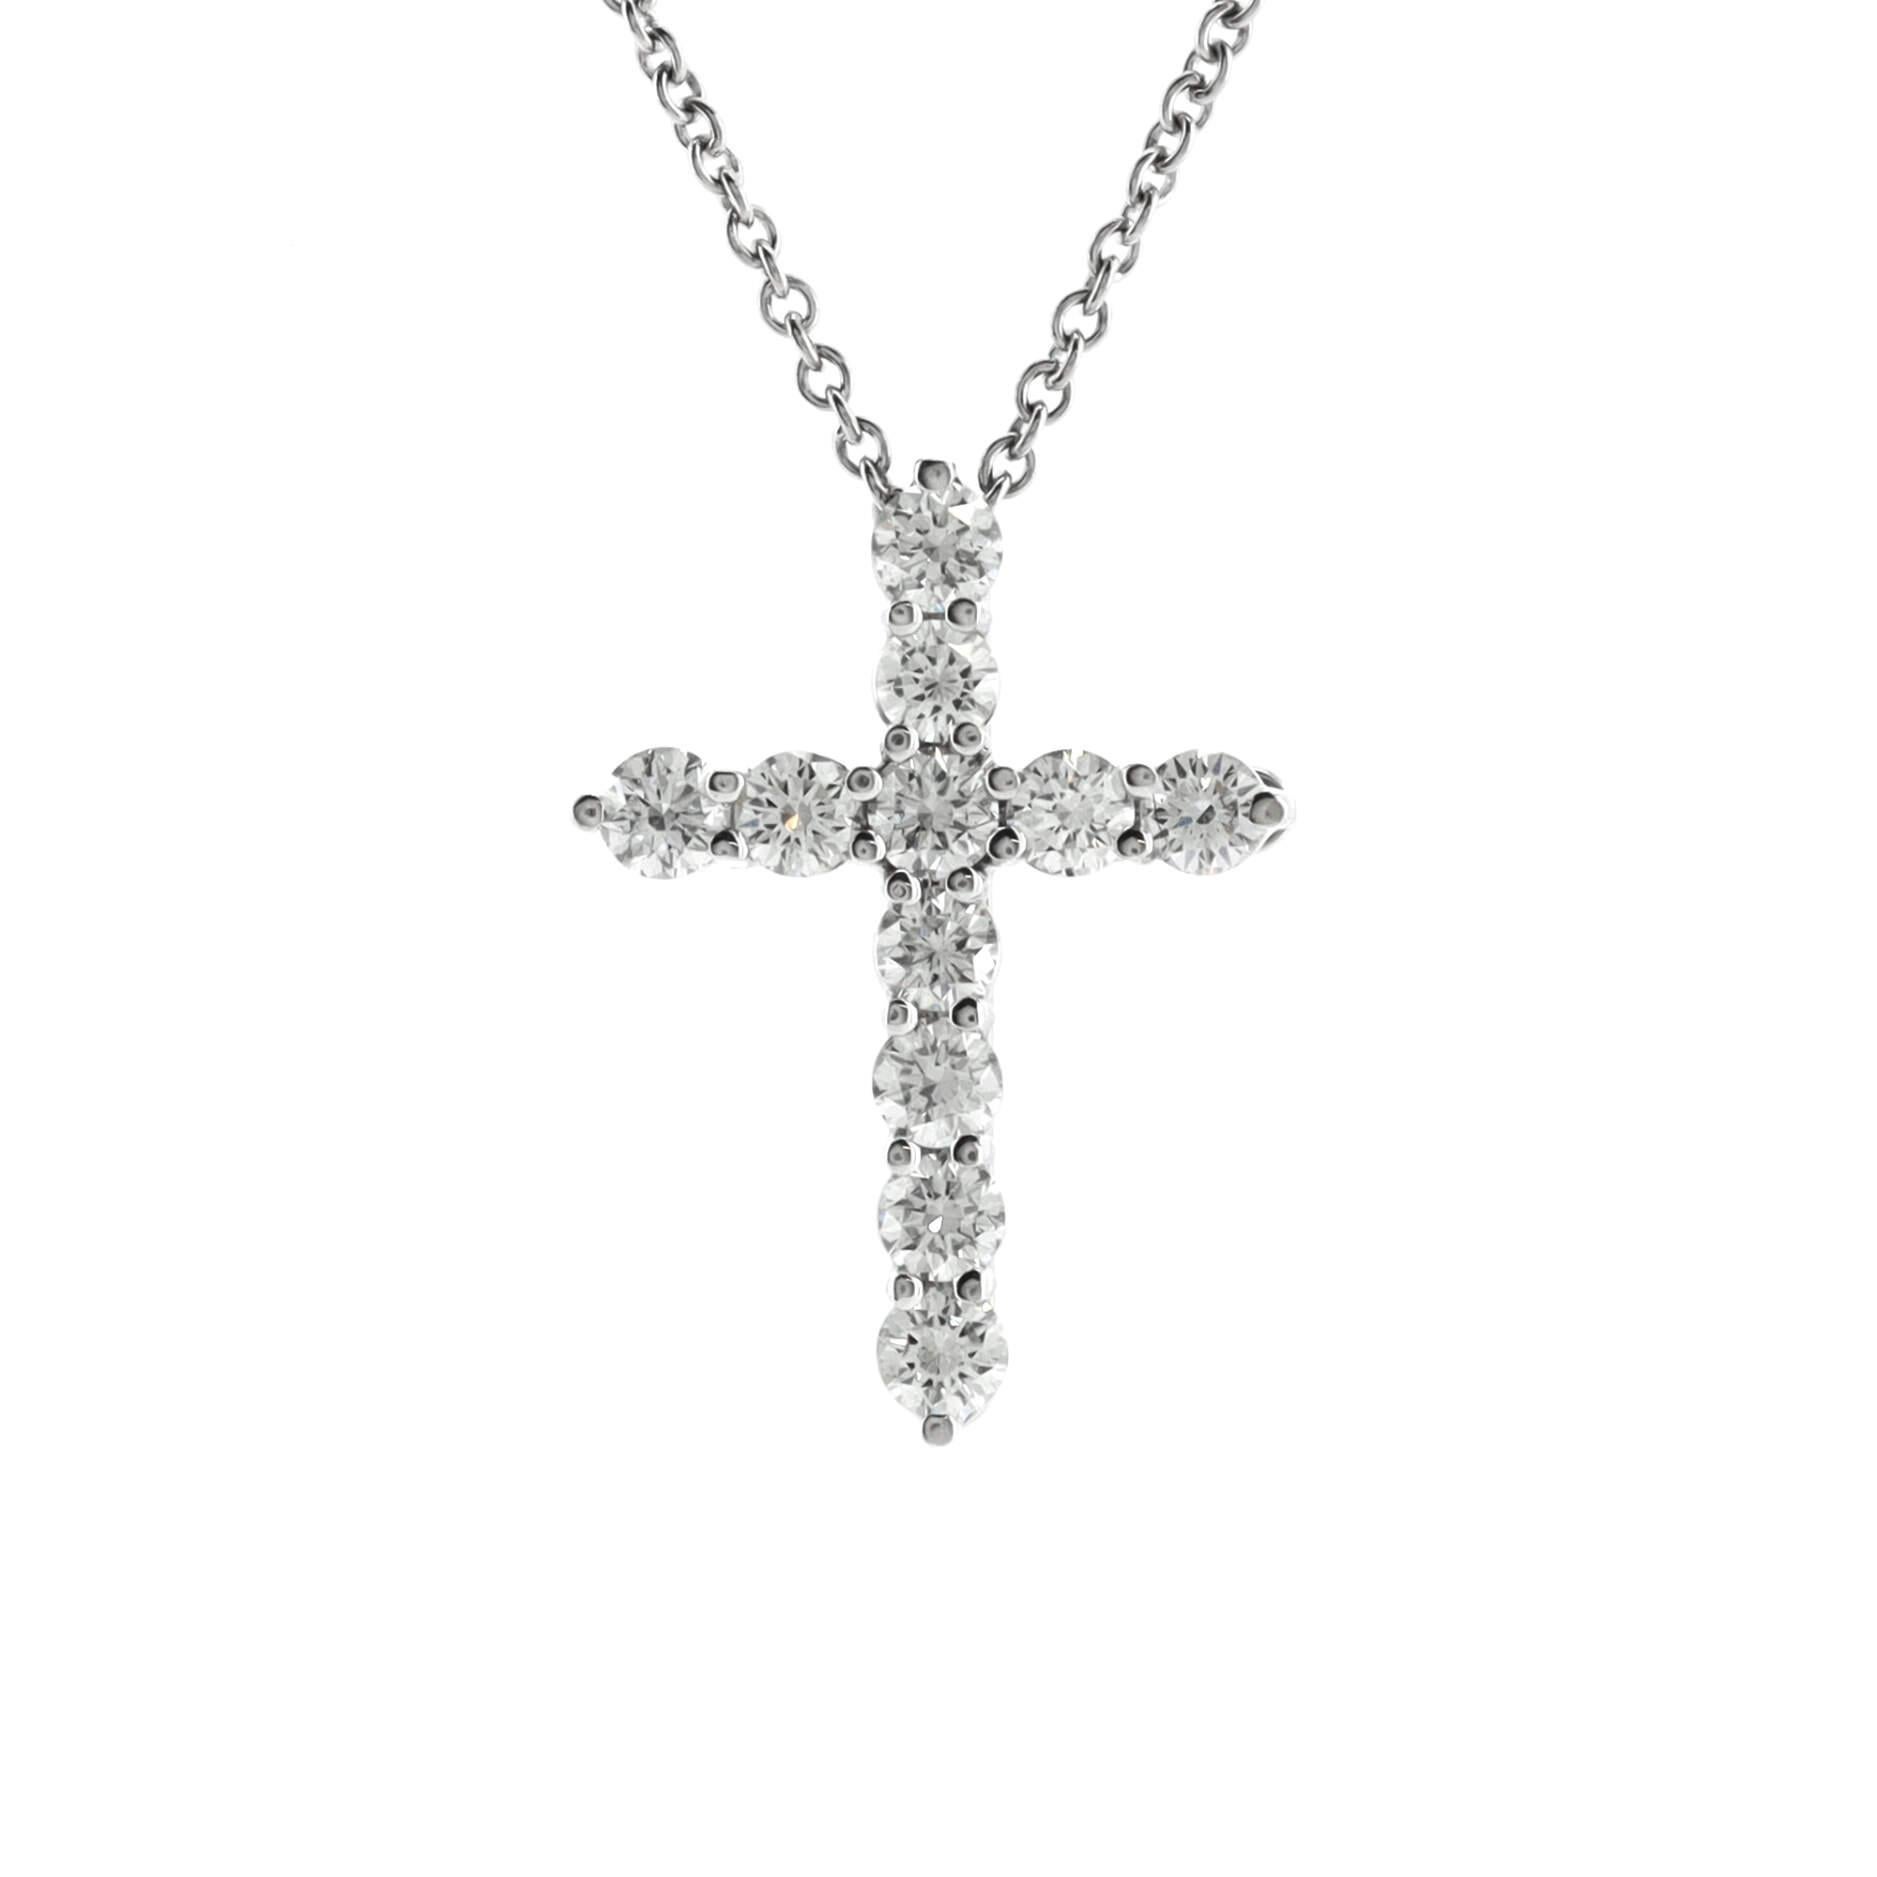 tiffany's cross necklace